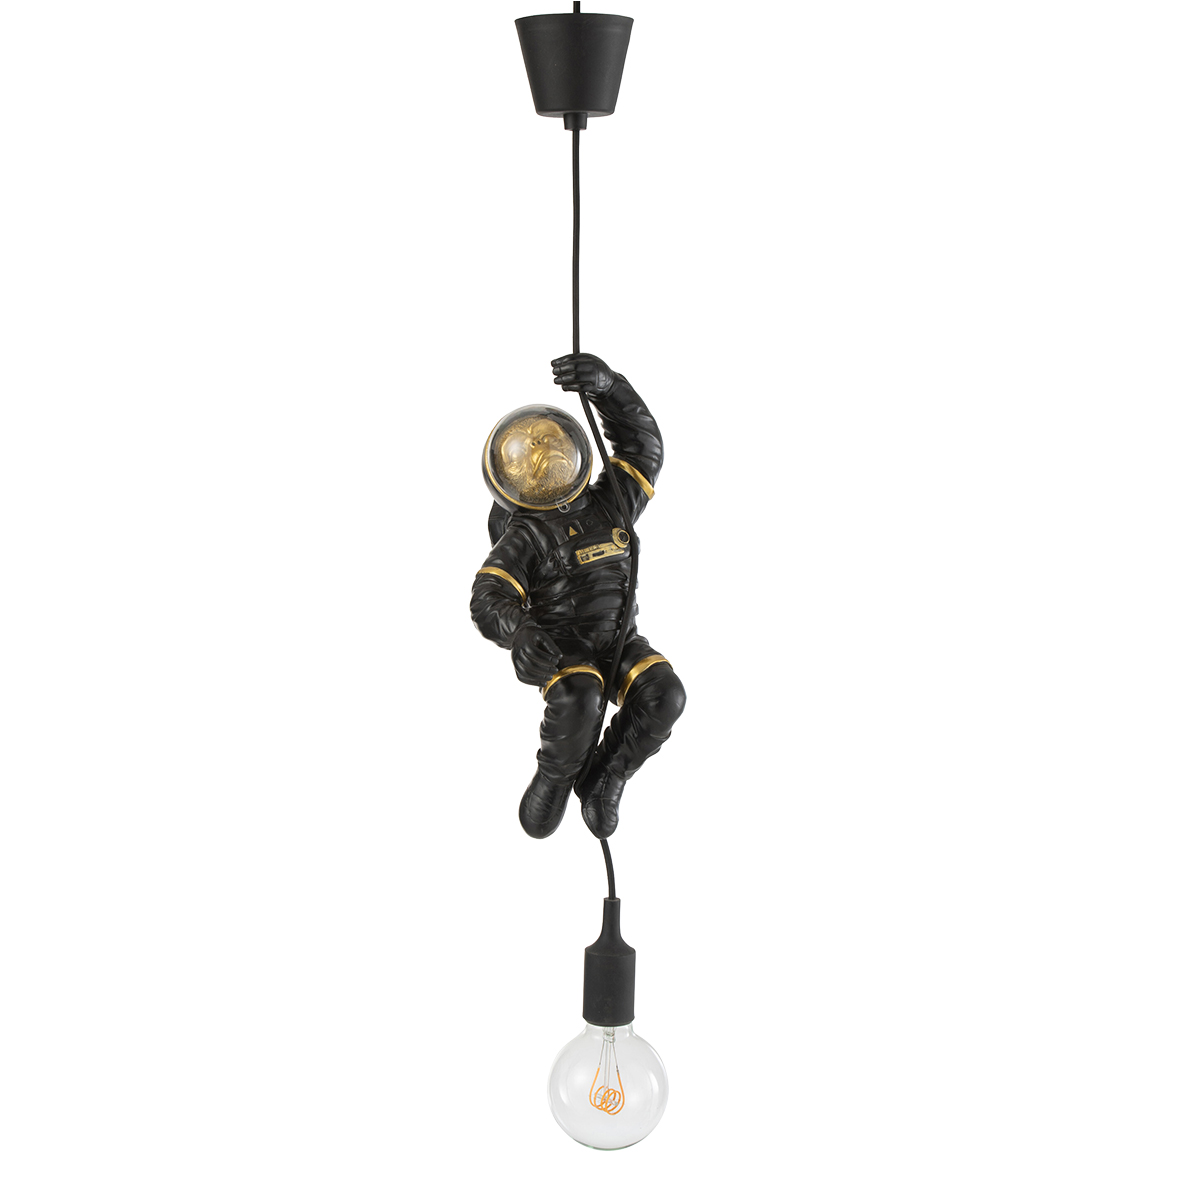 Astronaut monkey chandelier in black resin 37 cm